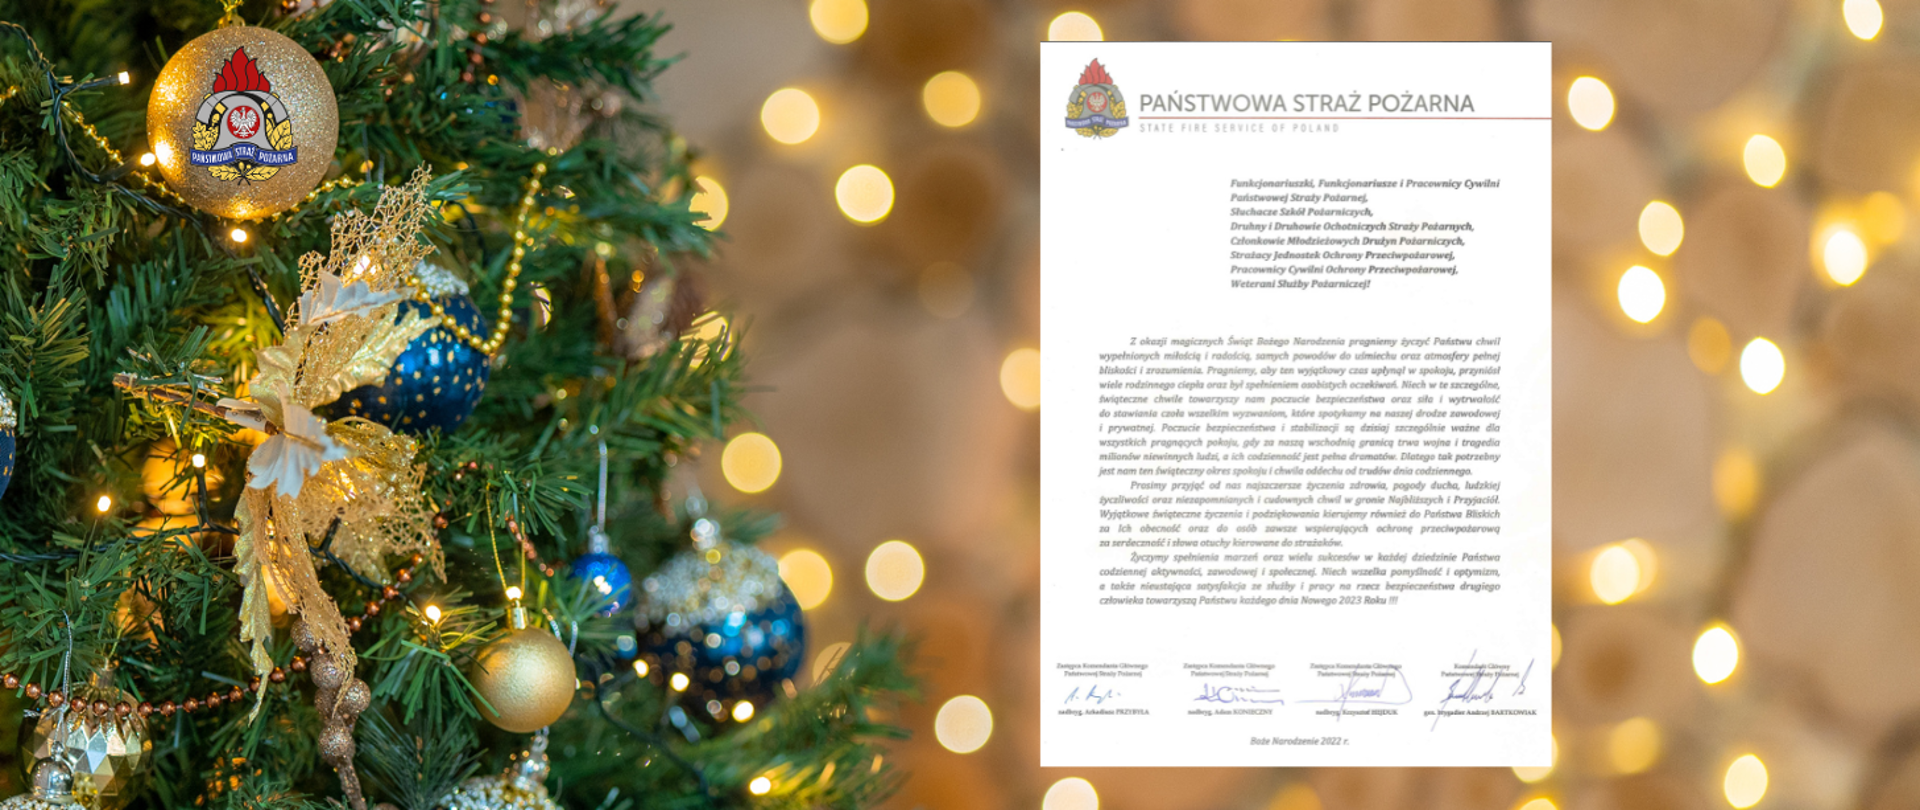 Zdjęcie poglądowe - świąteczna choinka, w tle lampki świąteczne, na jednej z bombek logo Państwowej Straży Pożarnej. Po lewej stronie choinki grafika życzeń świąteczno - noworocznych kierownictwa Państwowej Straży Pożarnej